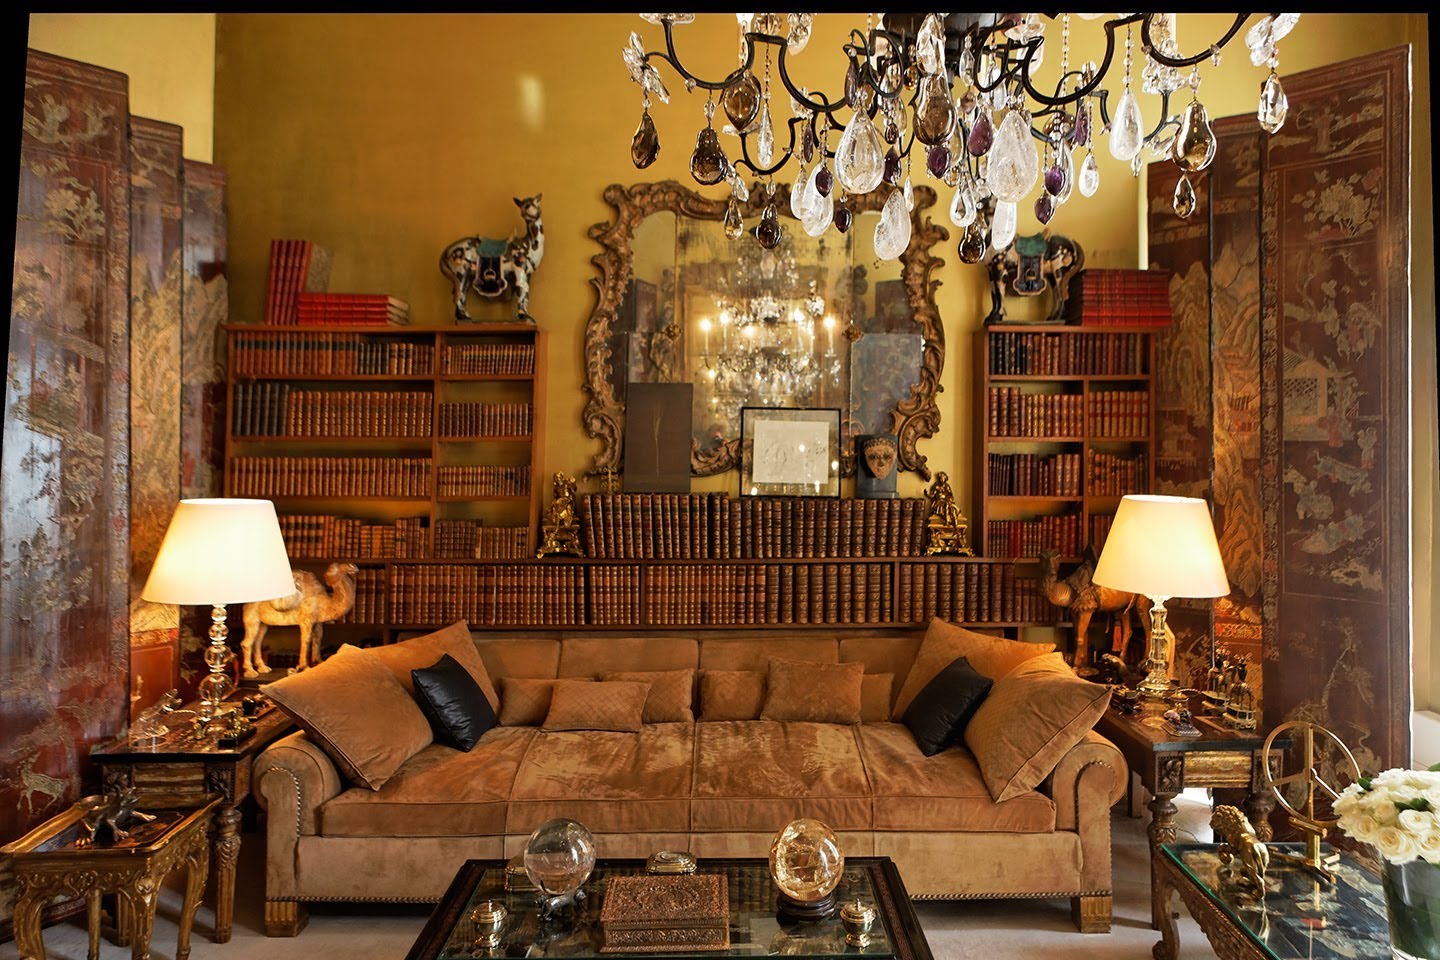 Sala da casa-atelier da estilista Coco Chanel - tudo em pares - almofadas , cor preta - lustres , bolas de cristal, animais em artesanato- e ao fundo uma enorme biblioteca de livros